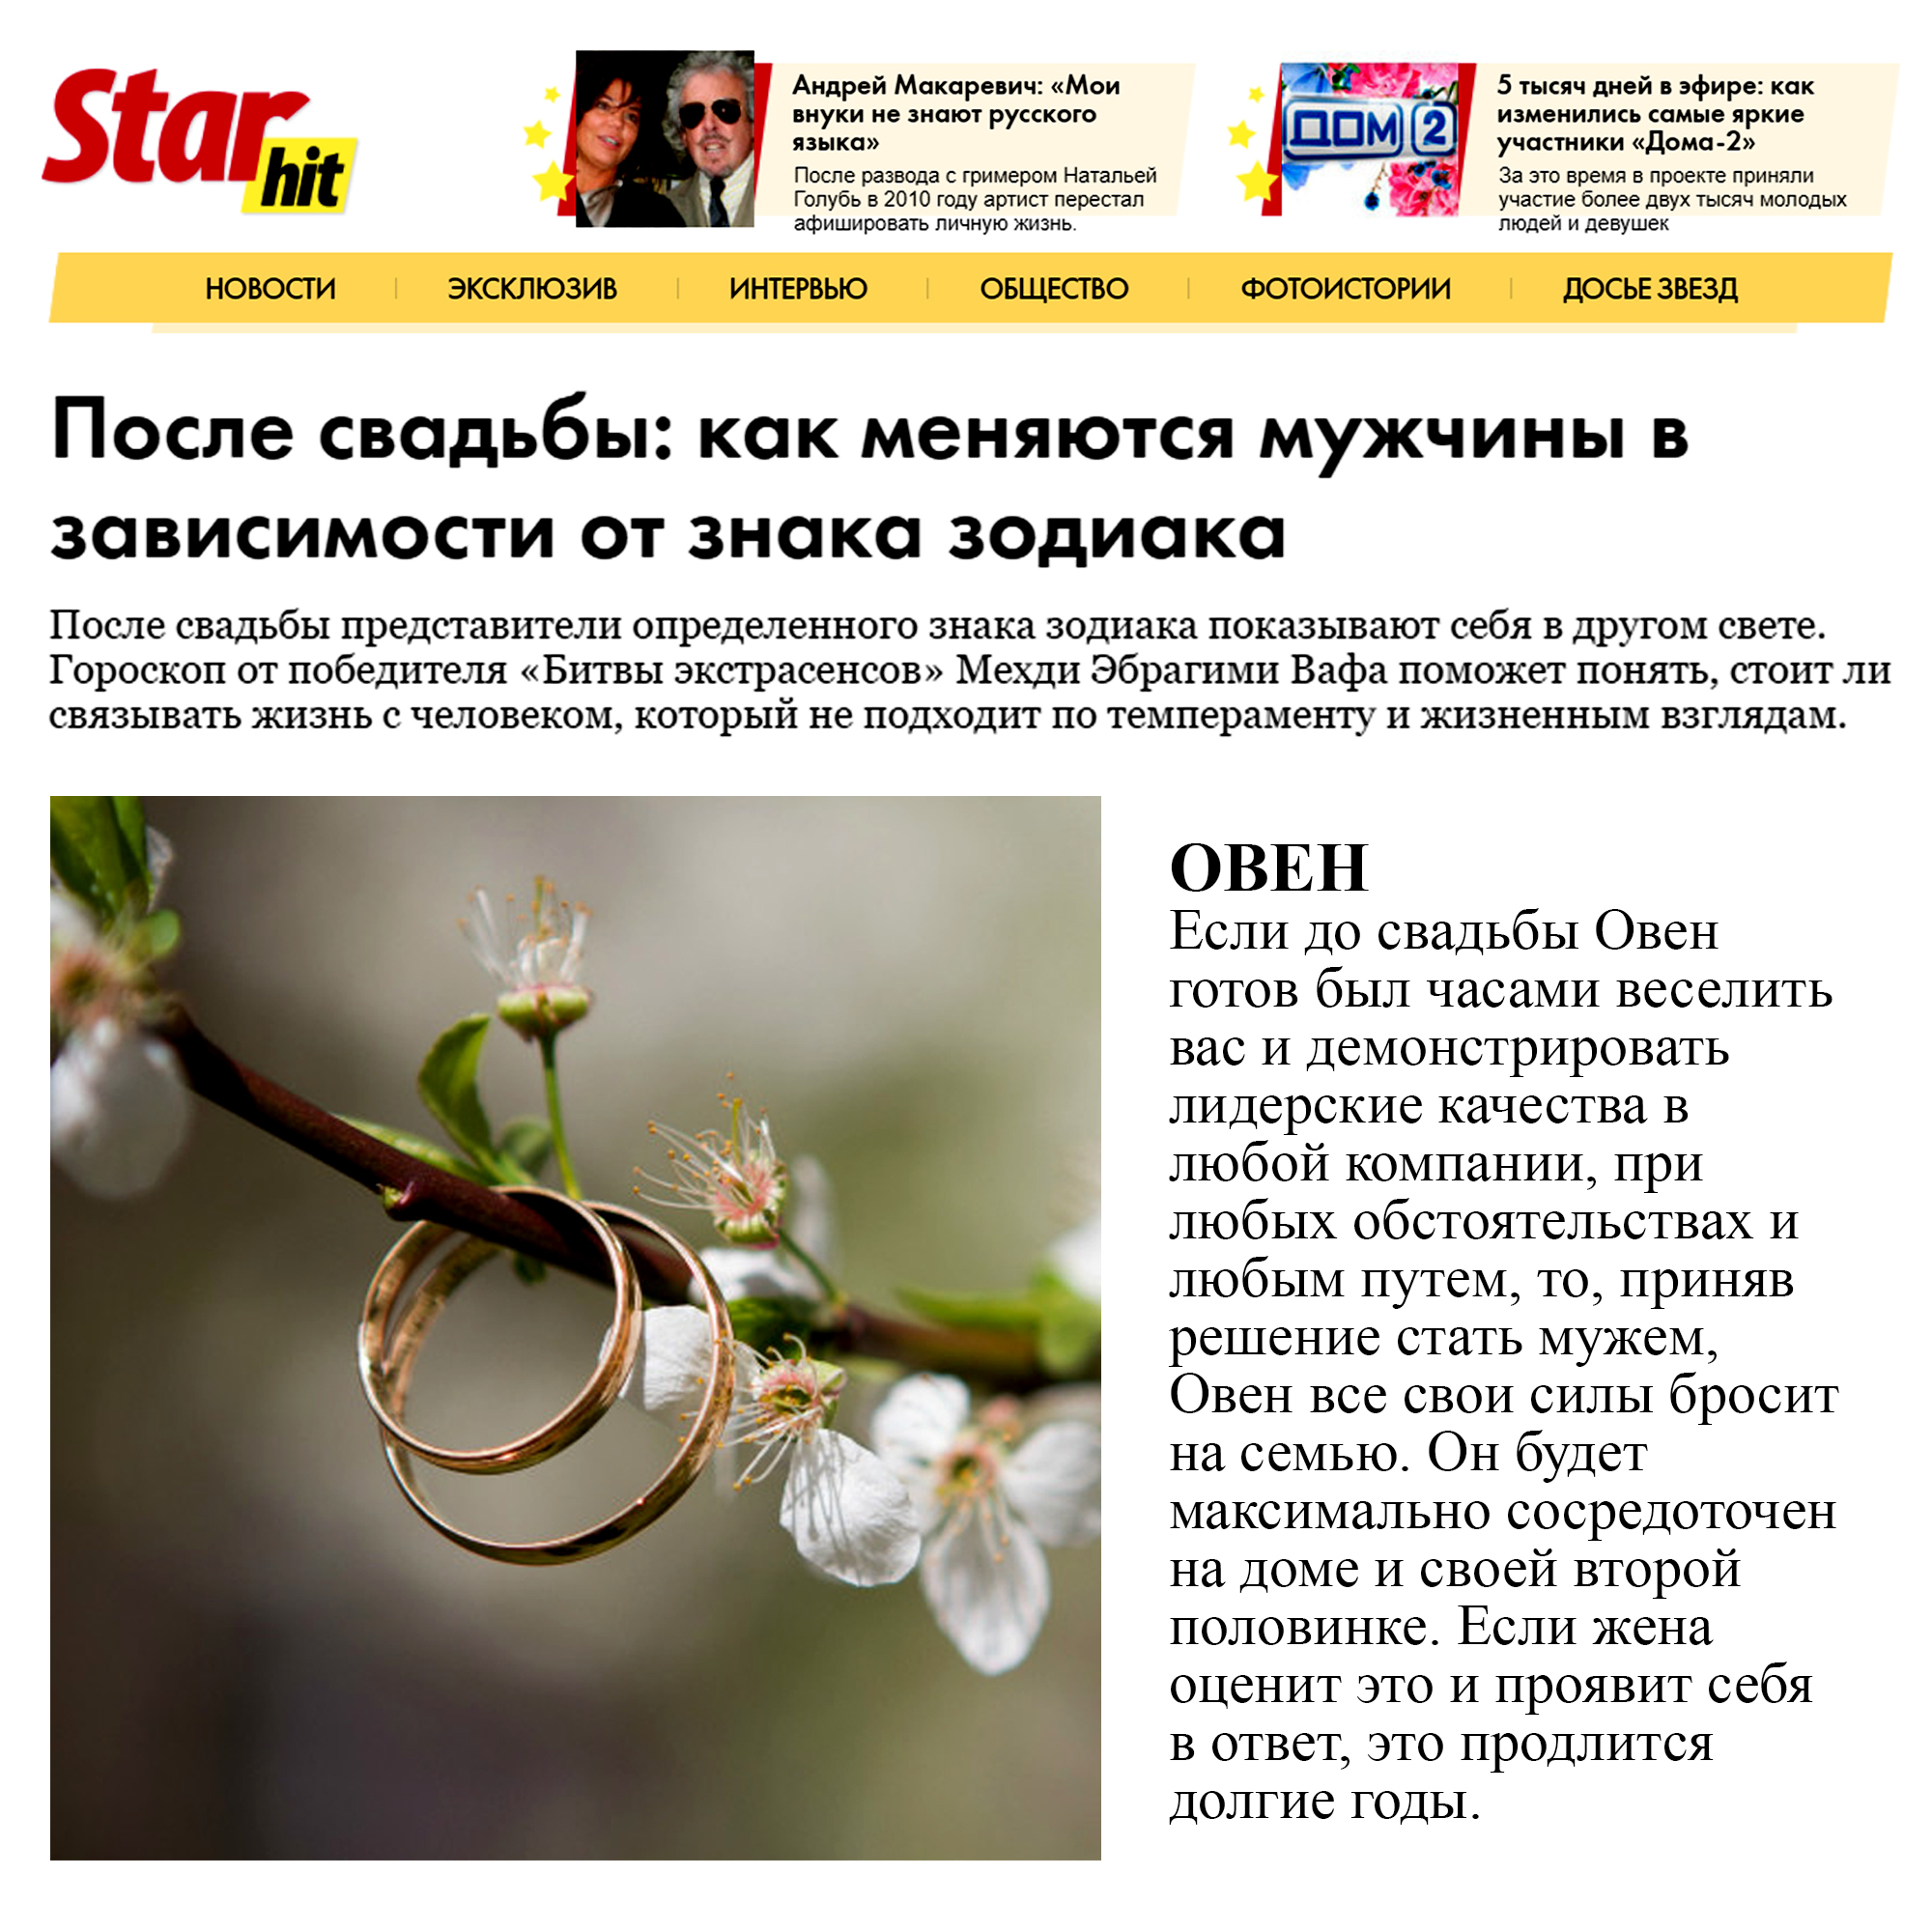 Starhit.ru: Гороскоп от победителя Битвы Экстрасенсов Мехди Эбрагими Вафа